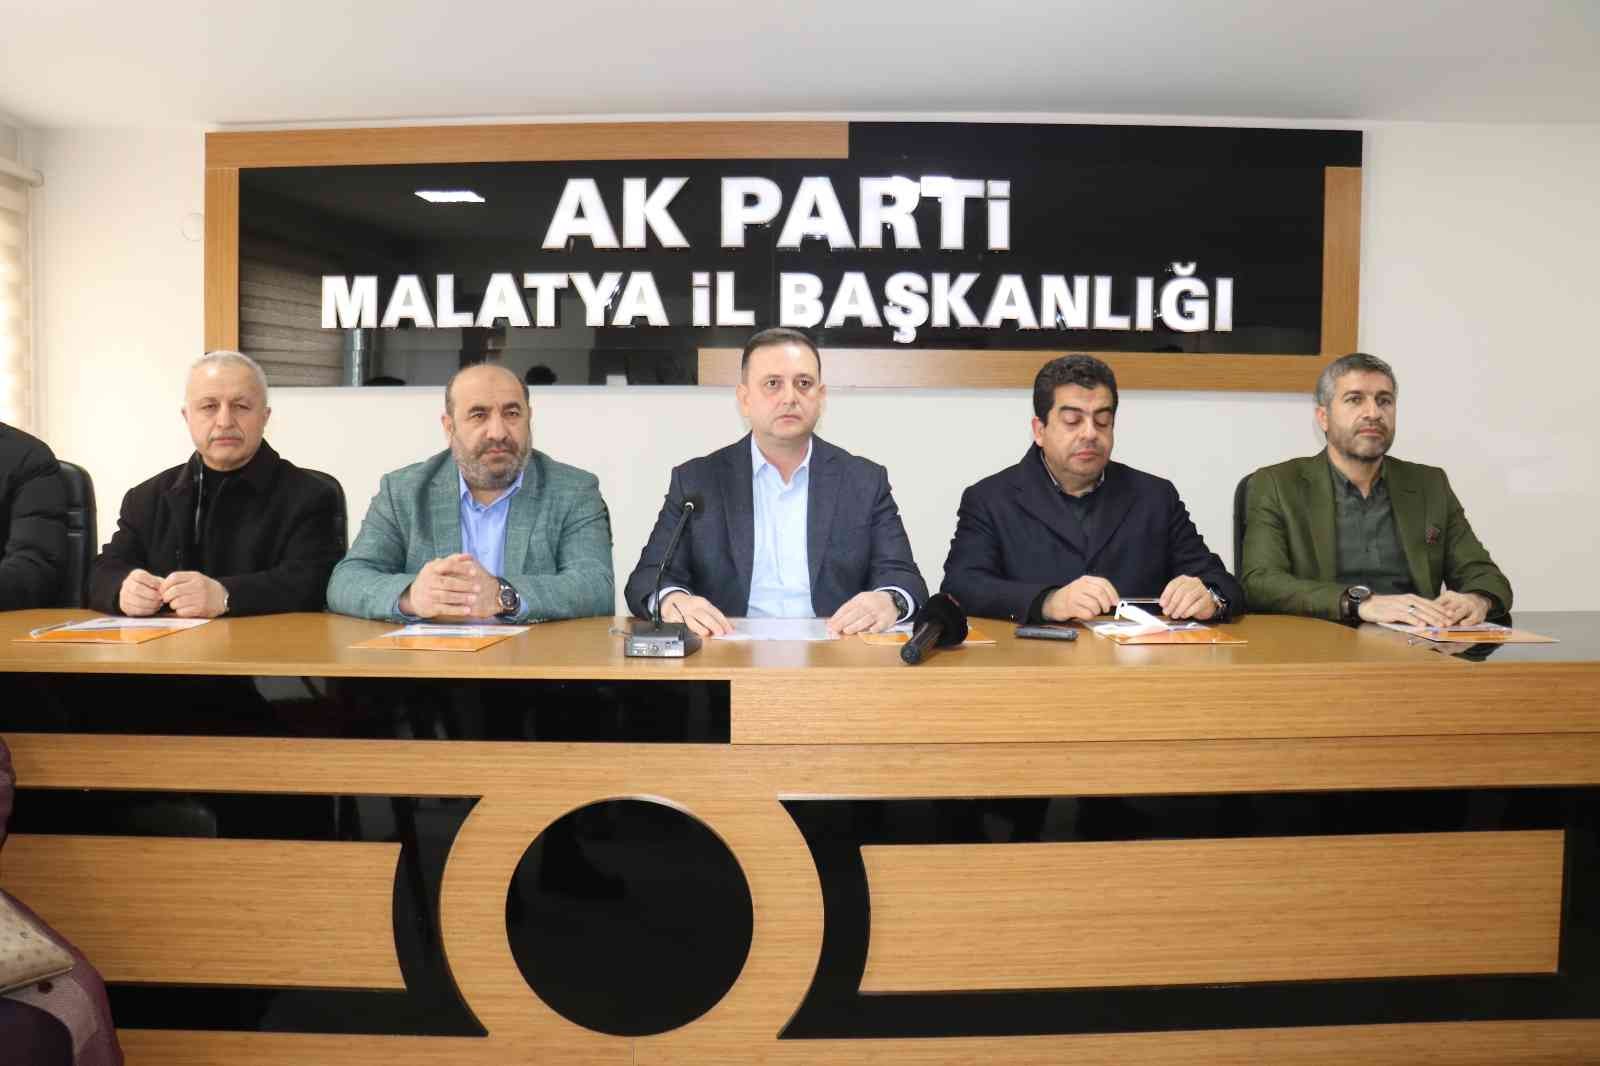 Ak Parti Malatya’da 28 Şubat açıklaması #malatya